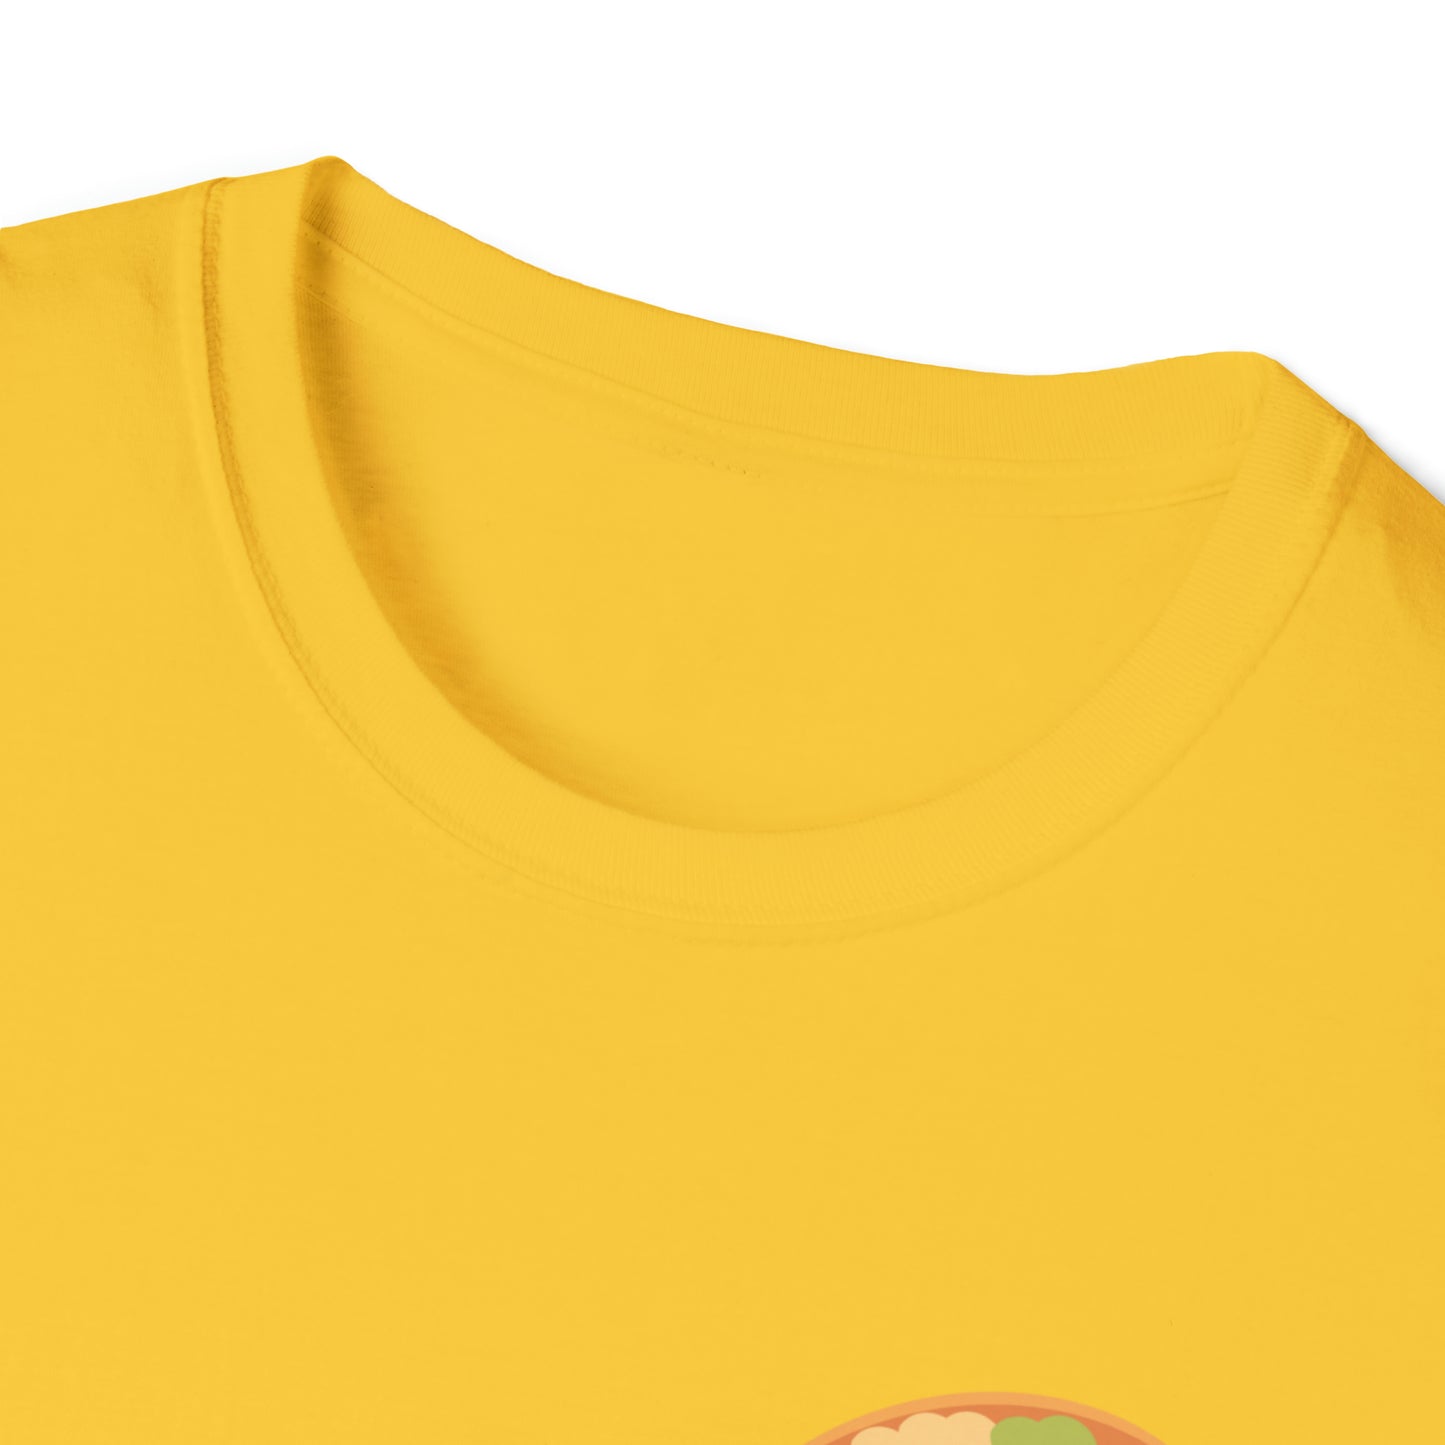 Taco Unisex Softstyle T-Shirt 2